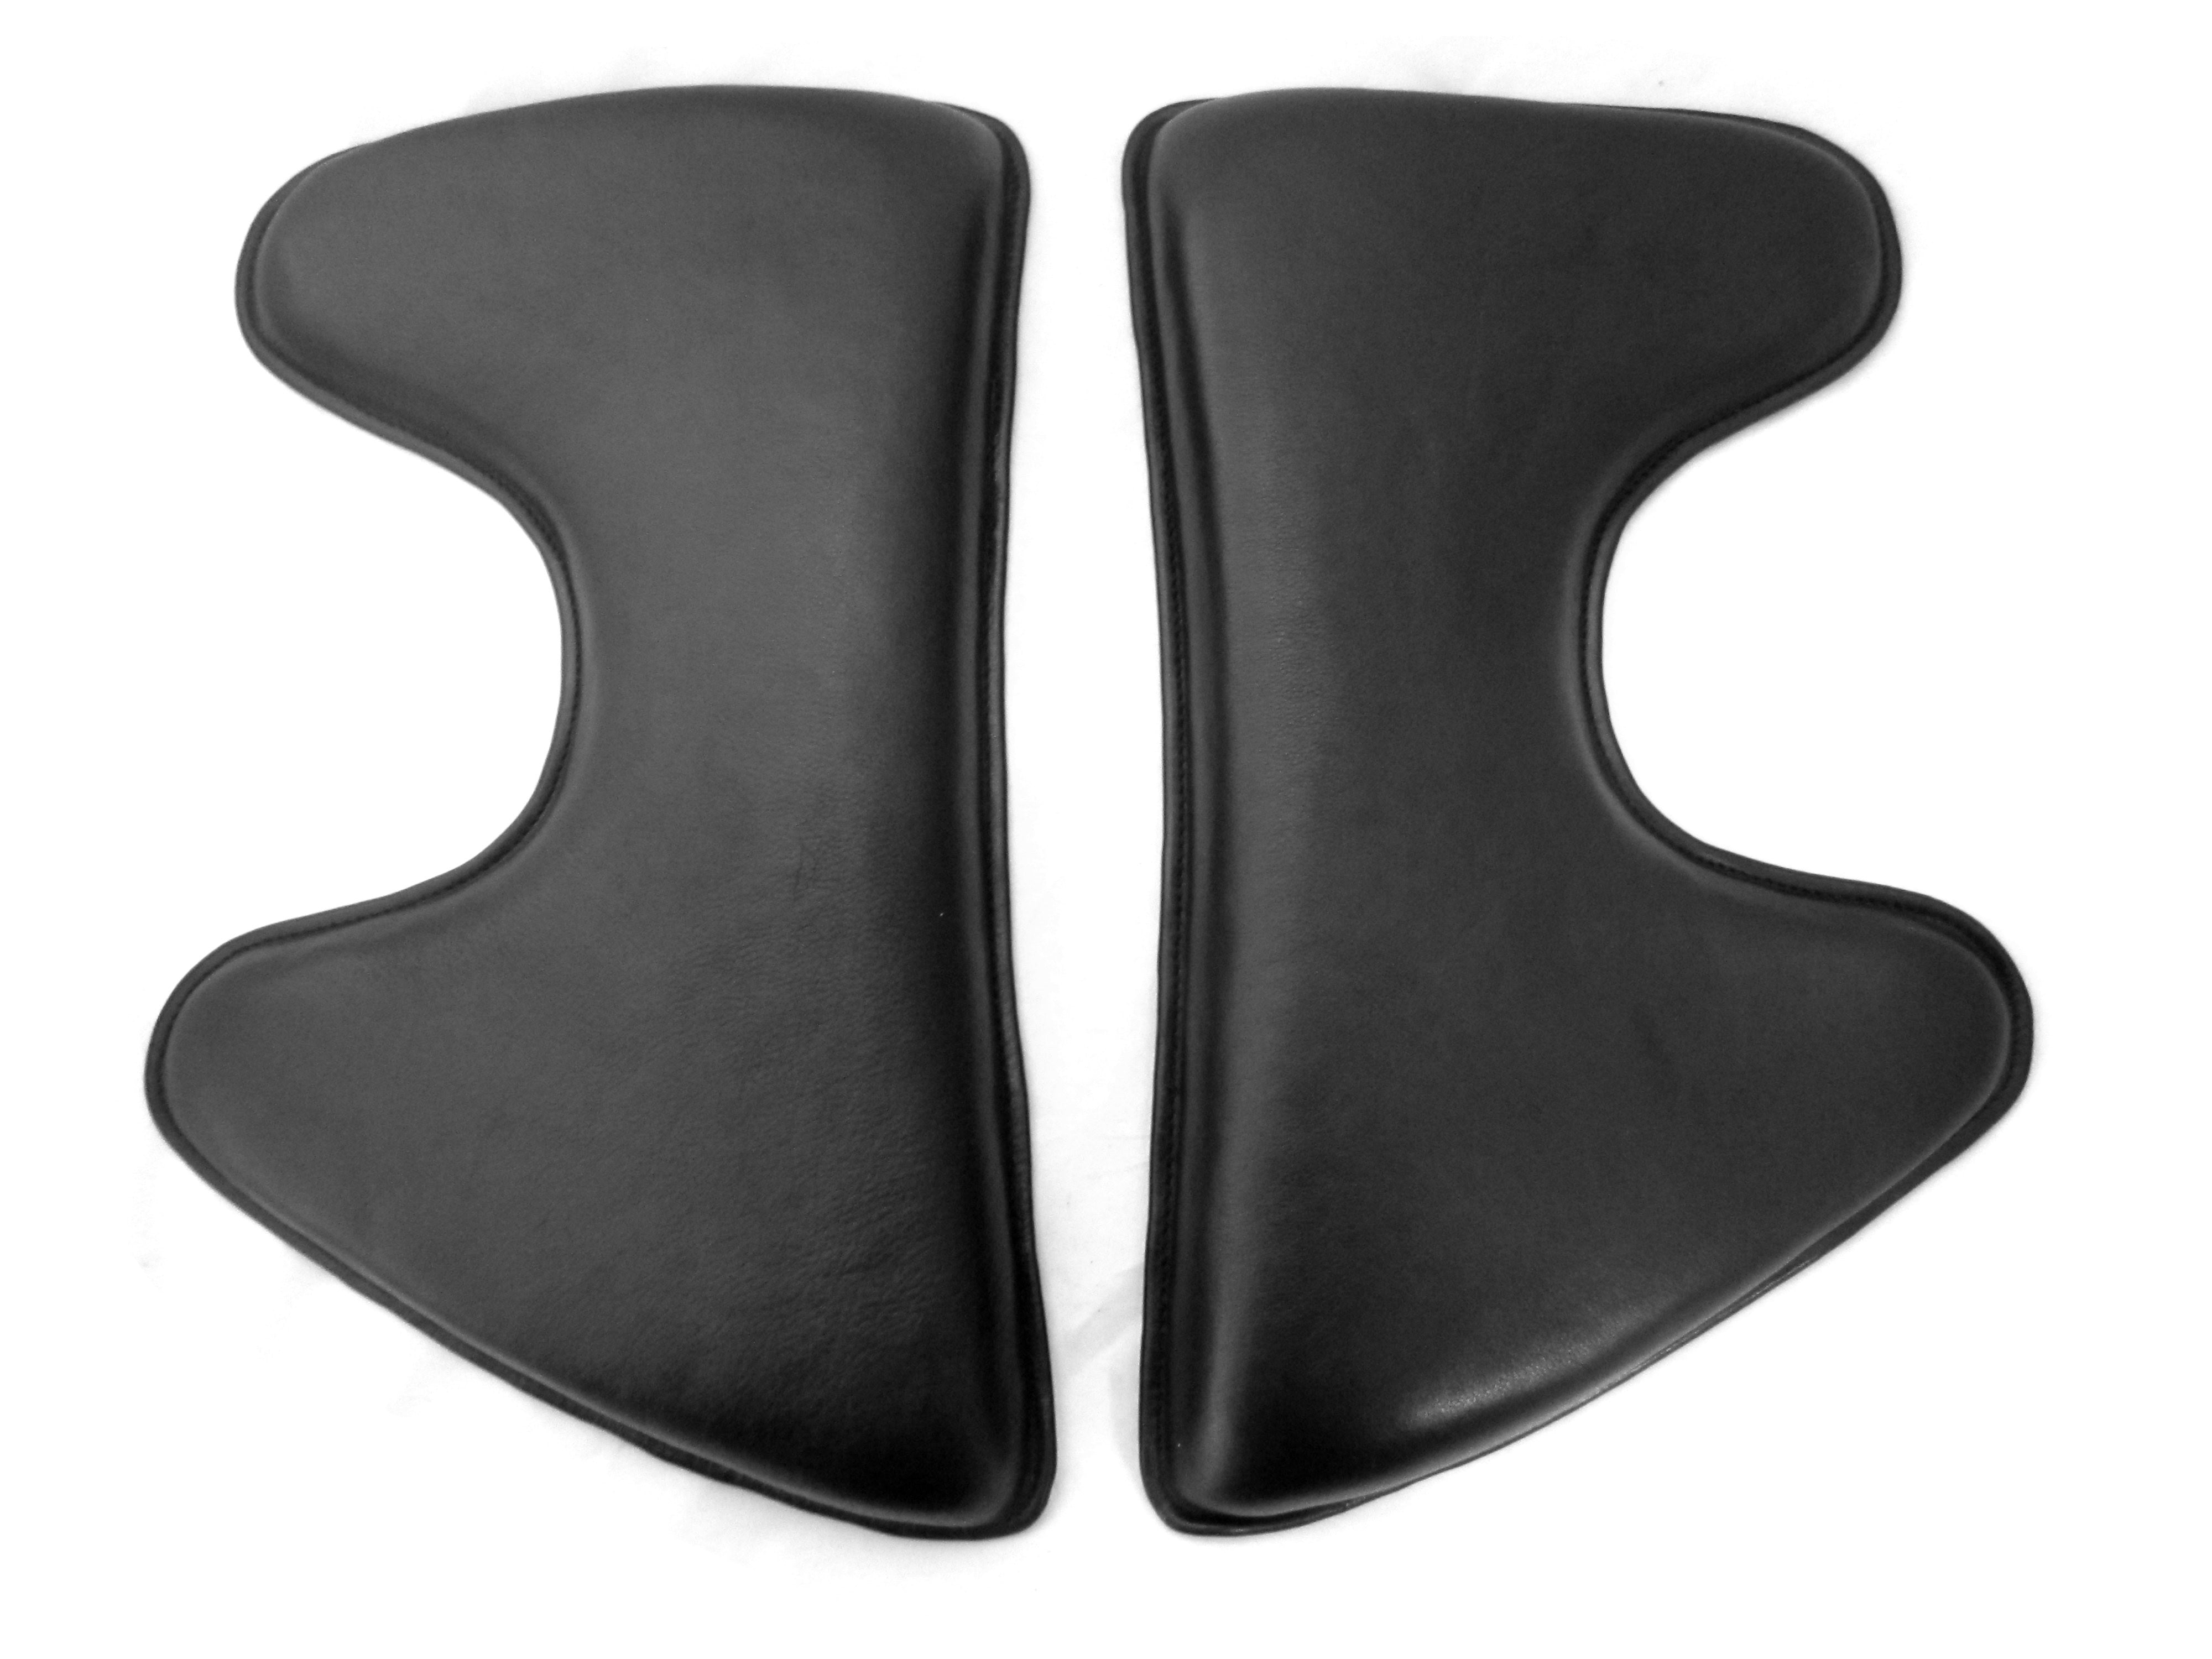 5-4-4 cm Front raised Velcro cushion Spanish shape; Panels/saddle cushions